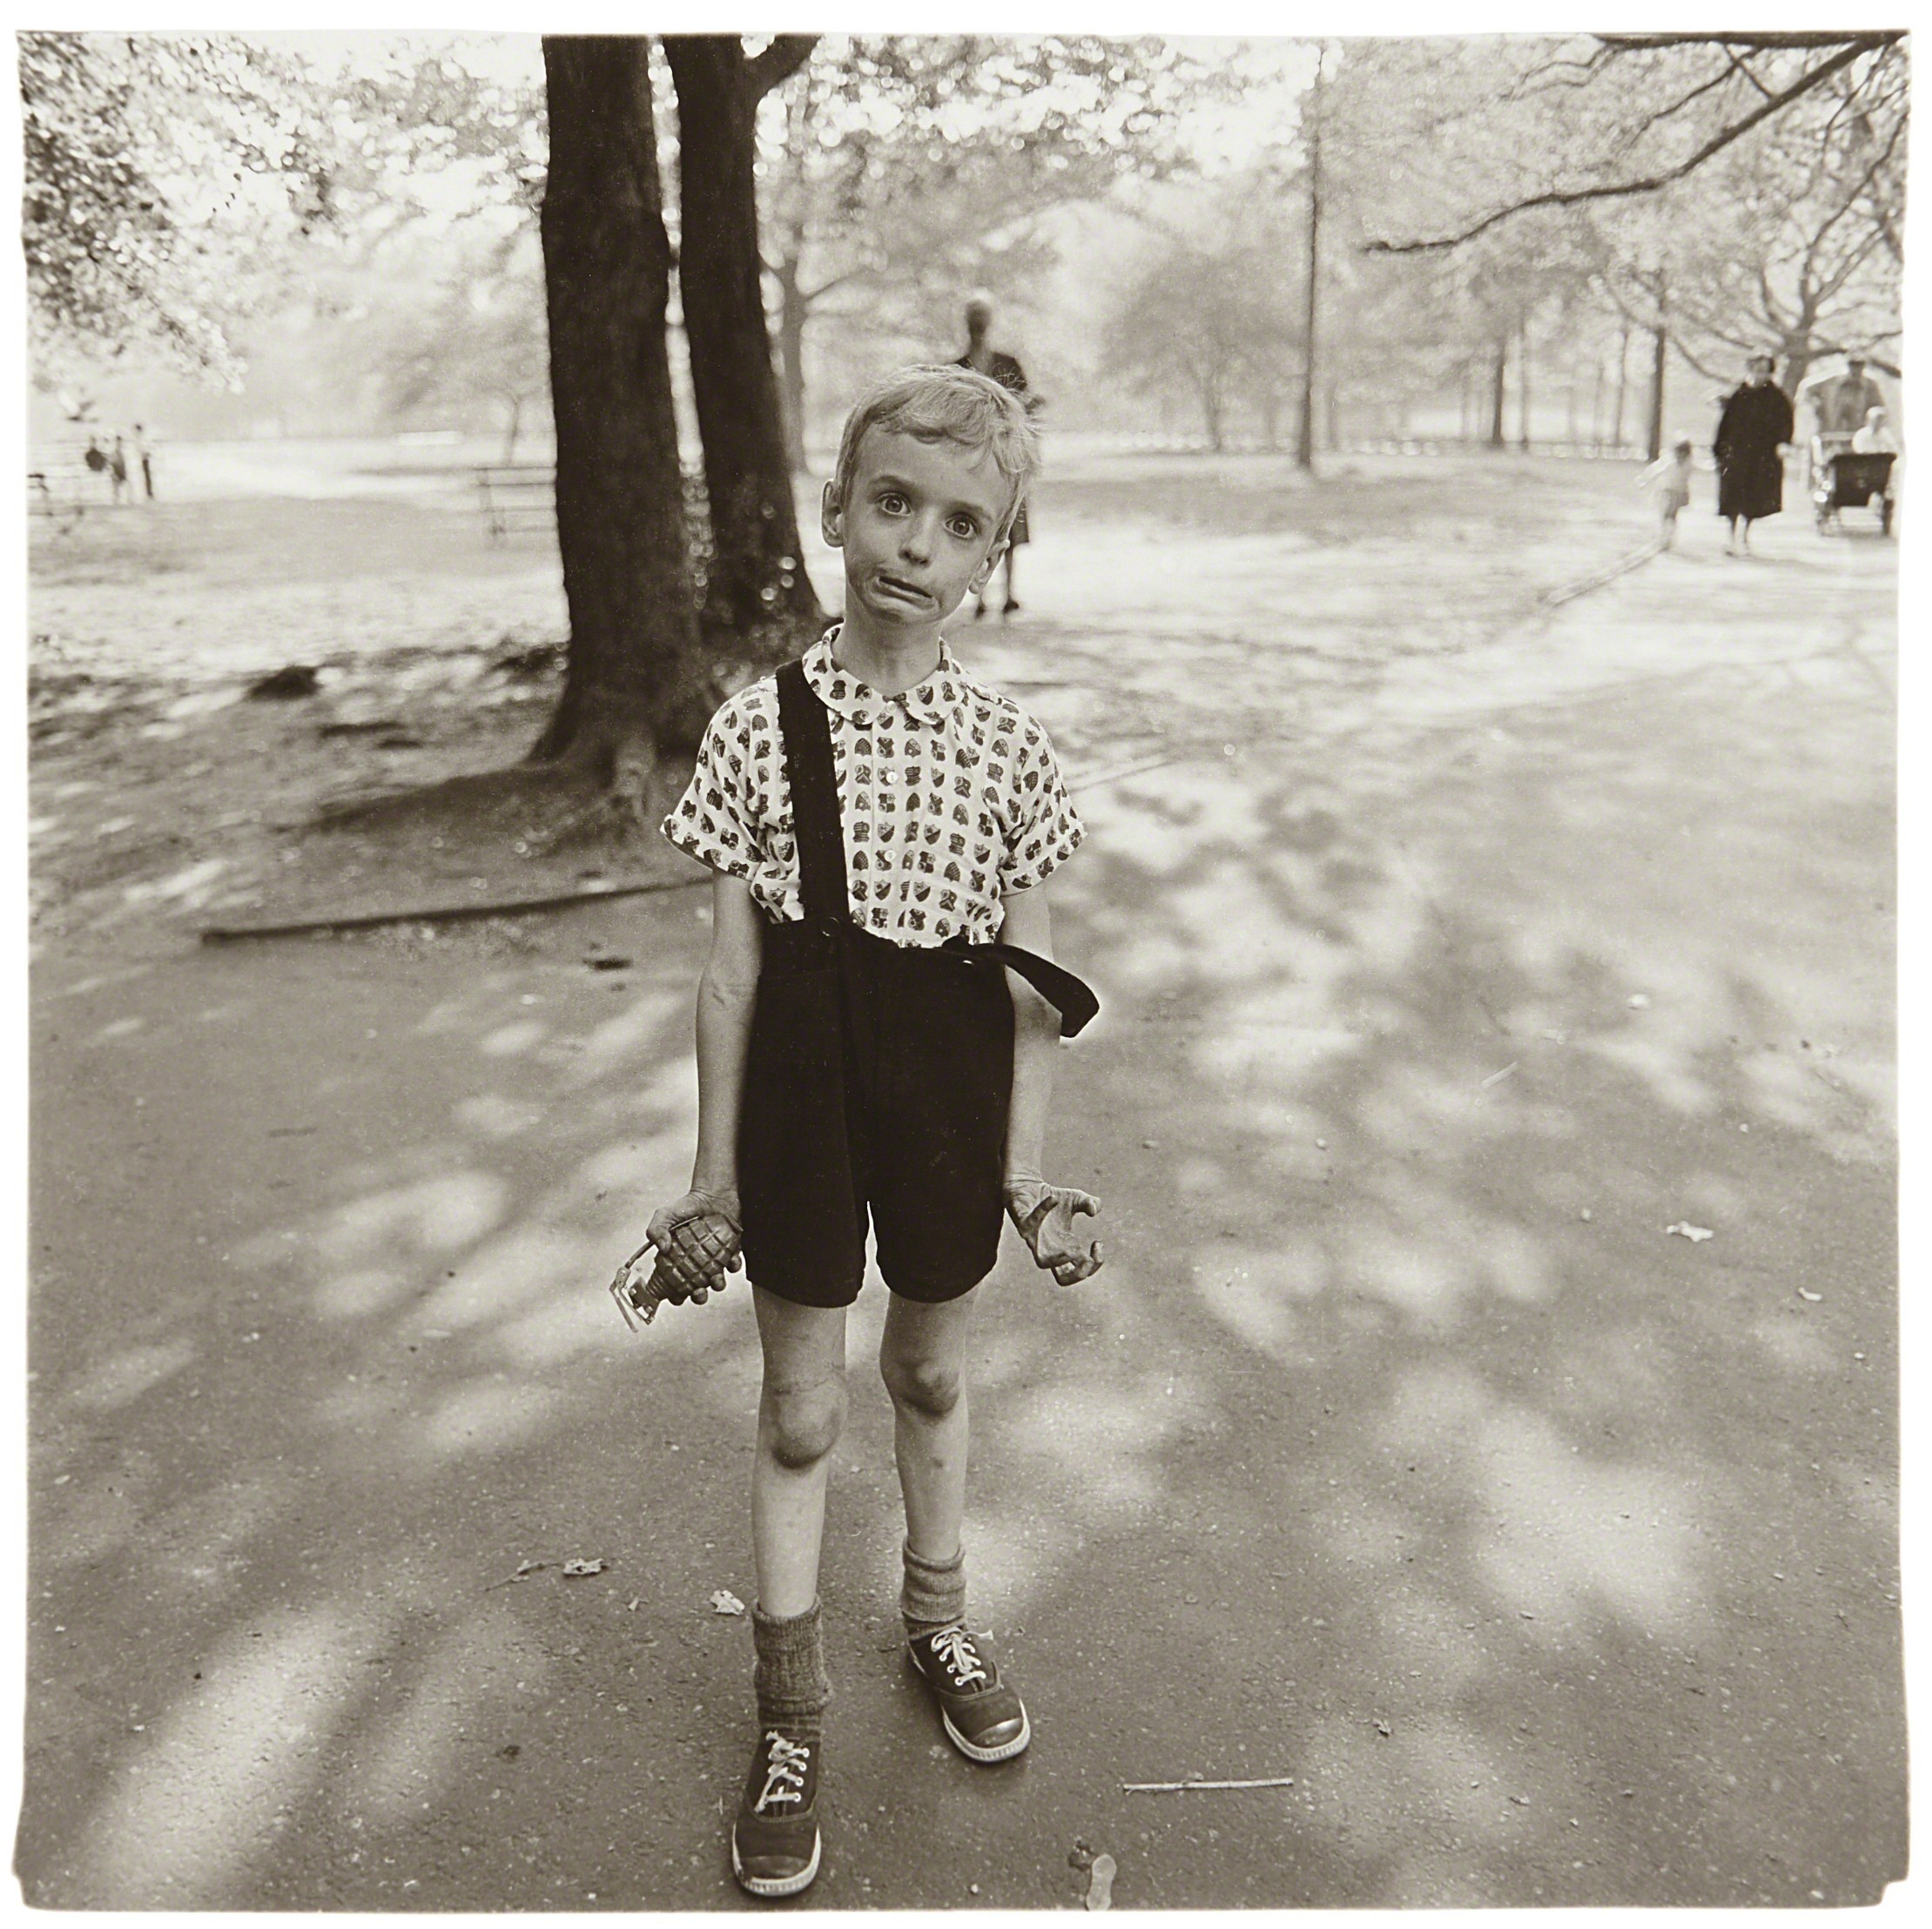 Ребенок с игрушечной гранатой в Центральном парке, Нью-Йорк, 1962. Фотограф Диана Арбус